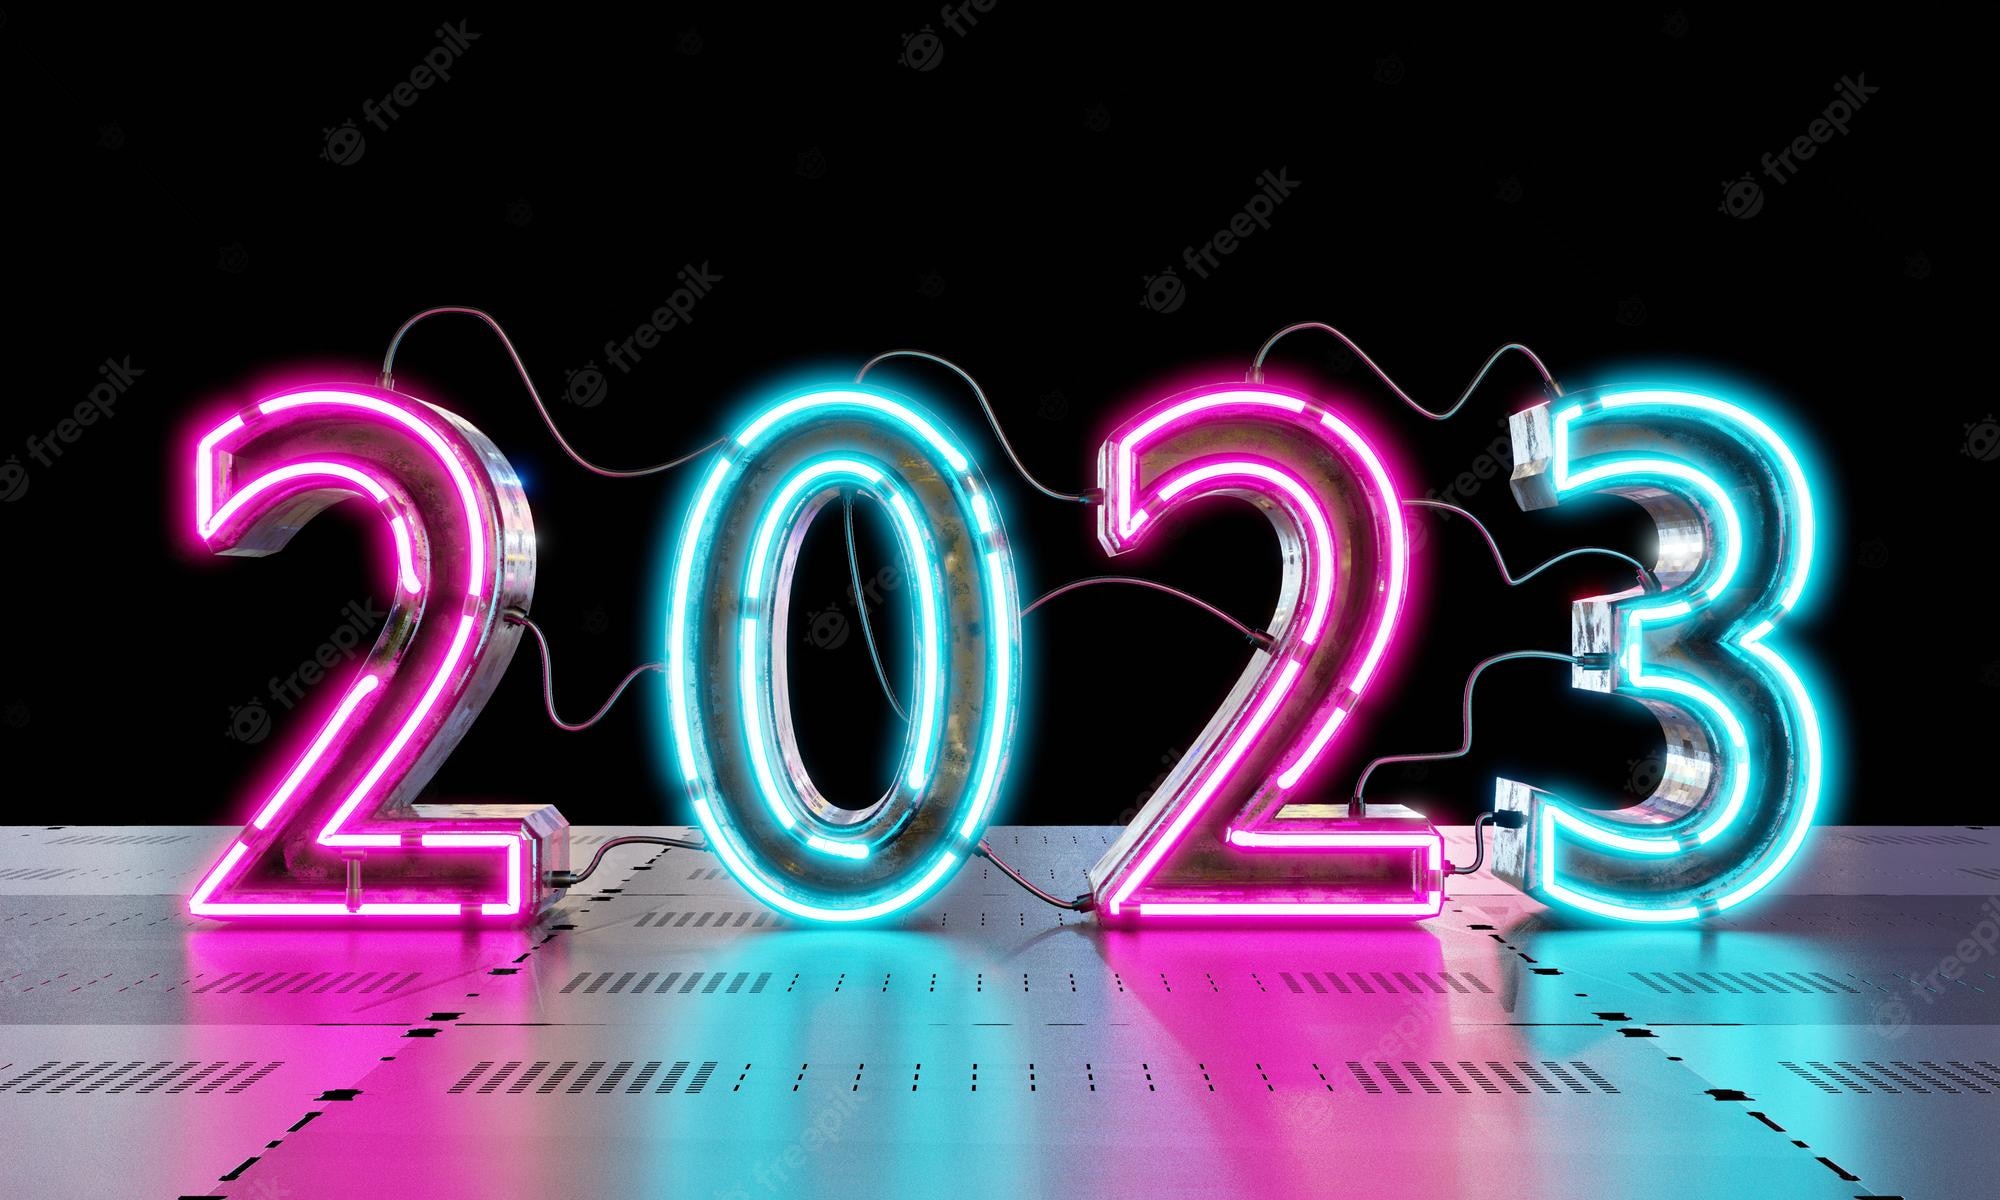 Hòa nhịp cùng tiếng cười và sự may mắn của một năm mới với hình nền Feliz 2024 đầy vui nhộn. Từ những hình ảnh đầy màu sắc và sinh động, bạn sẽ cảm thấy cuộc sống được tràn đầy sức sống và niềm vui. Hãy cùng khám phá ngay những lựa chọn hình nền Feliz 2024 đặc sắc.